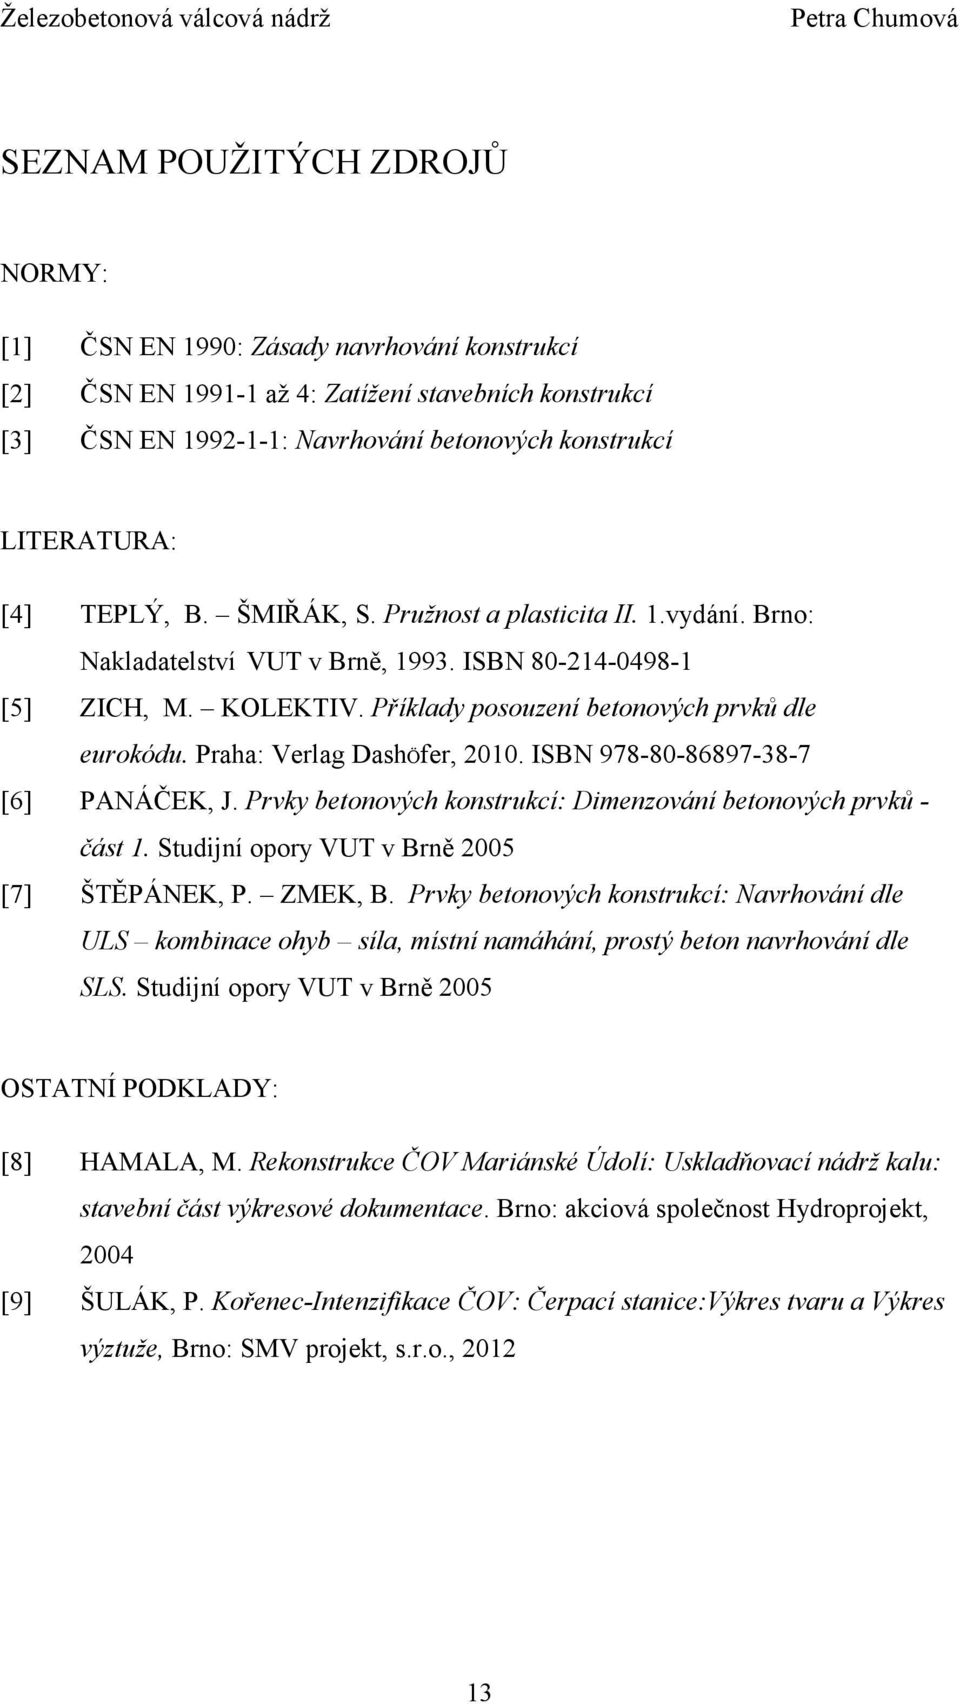 Praha: Verlag DashÖfer, 2010. ISBN 978-80-86897-38-7 [6] PANÁČEK, J. Prvky betonových konstrukcí: Dimenzování betonových prvků - část 1. Studijní opory VUT v Brně 2005 [7] ŠTĚPÁNEK, P. ZMEK, B.